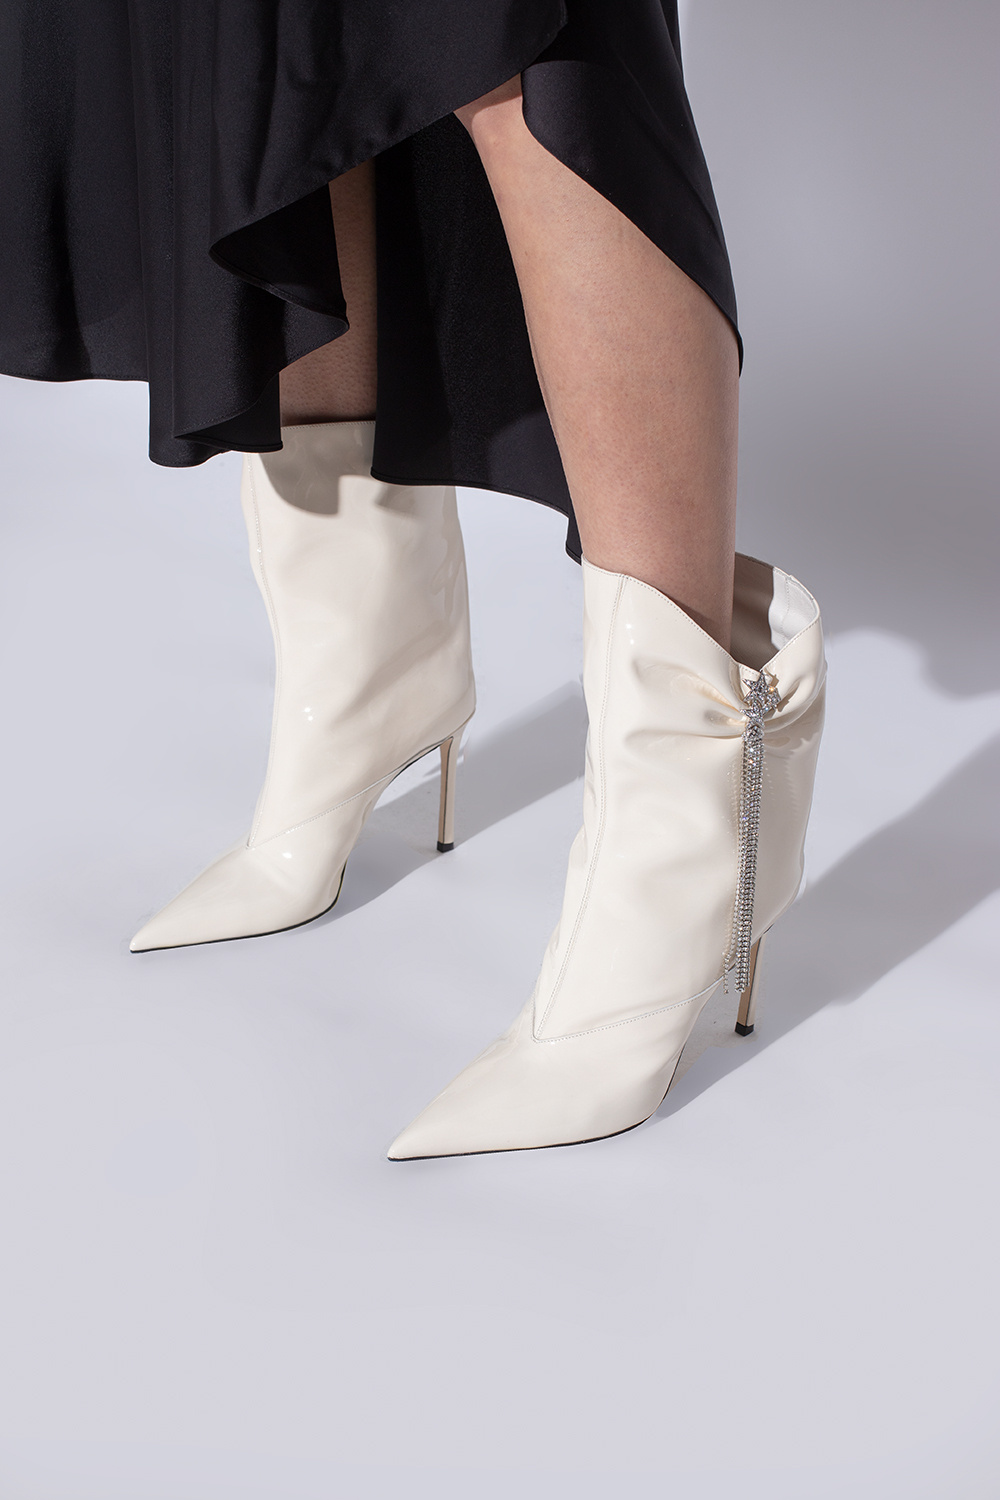 Jimmy Choo ‘Oriel’ heeled boots